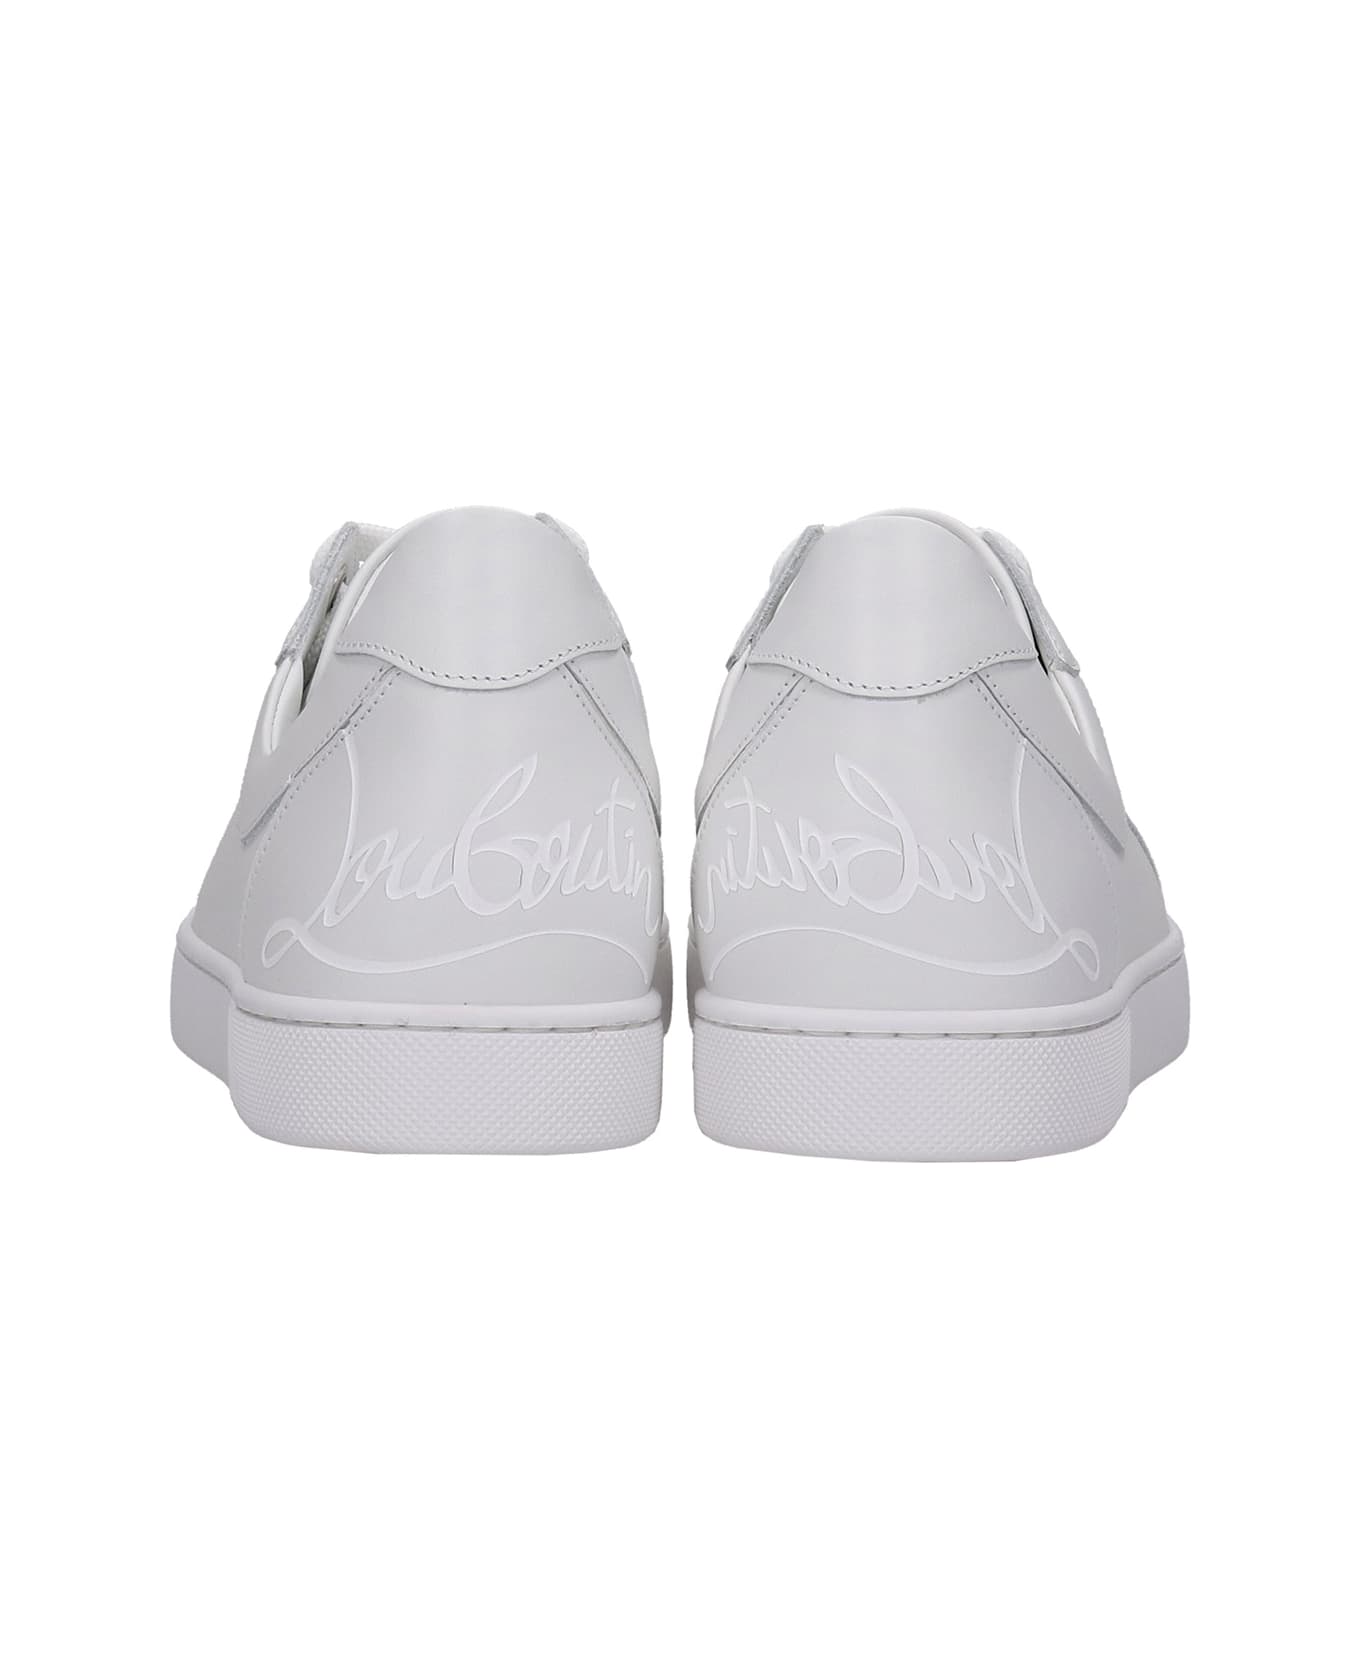 Christian Louboutin Elo Loubi  Sneakers In White Leather - white